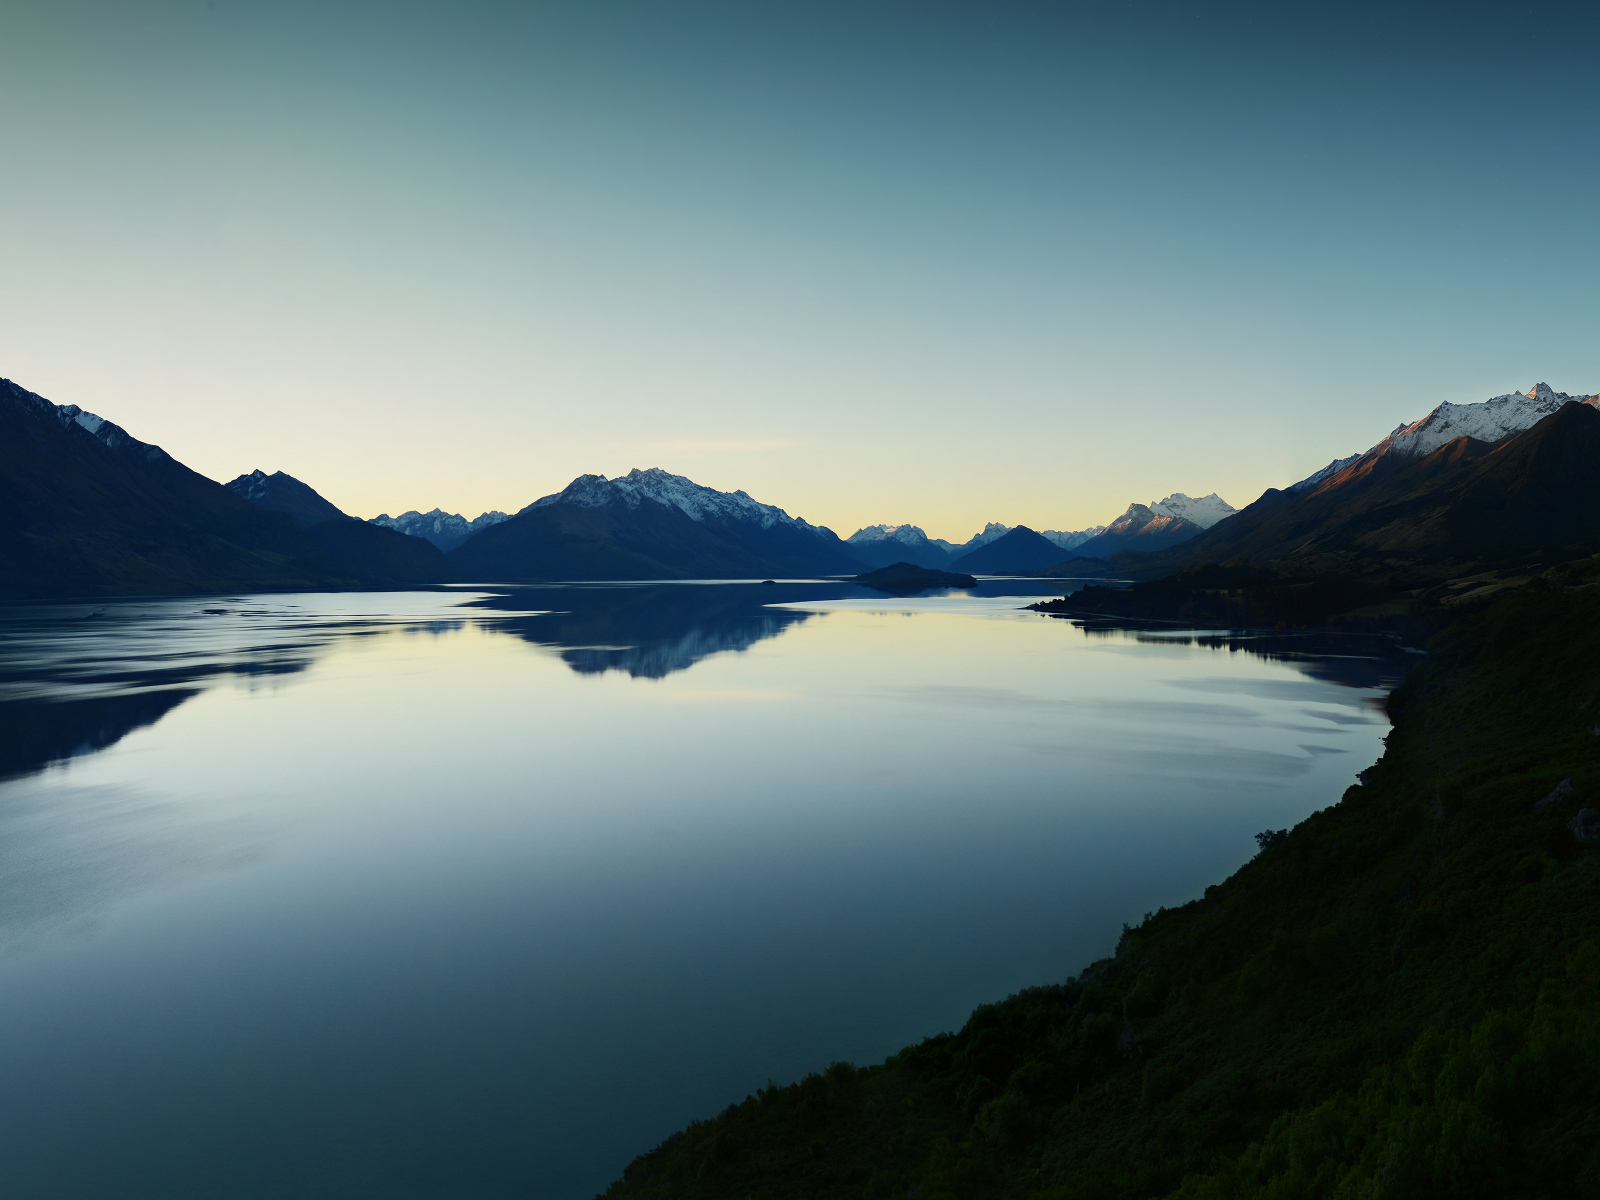 Lake Wakatipu after sunset, New Zealand